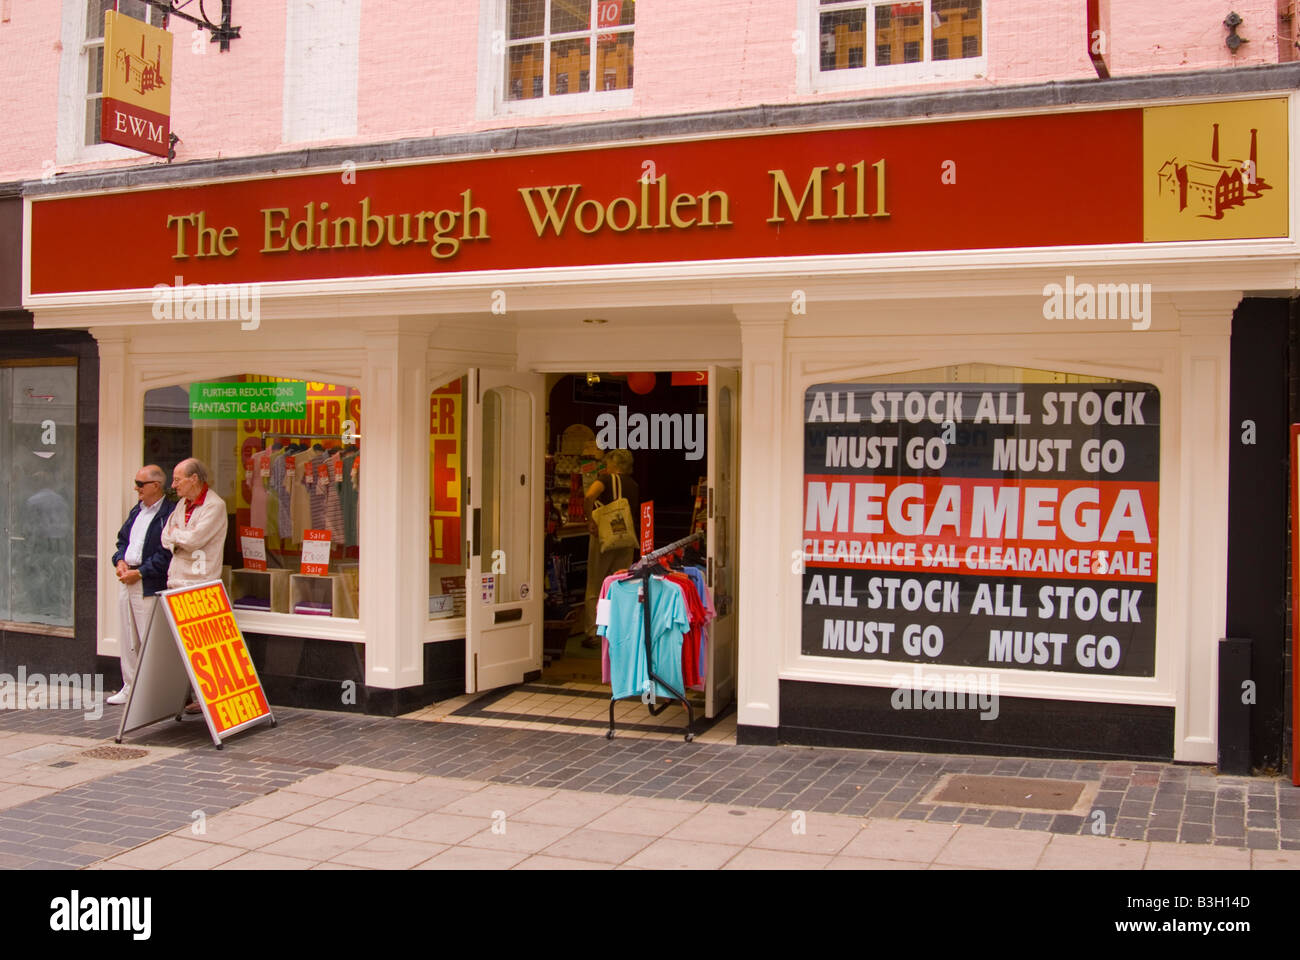 The Edinburgh Woolen Mill shop in Norwich,Norfolk,Uk Stock Photo